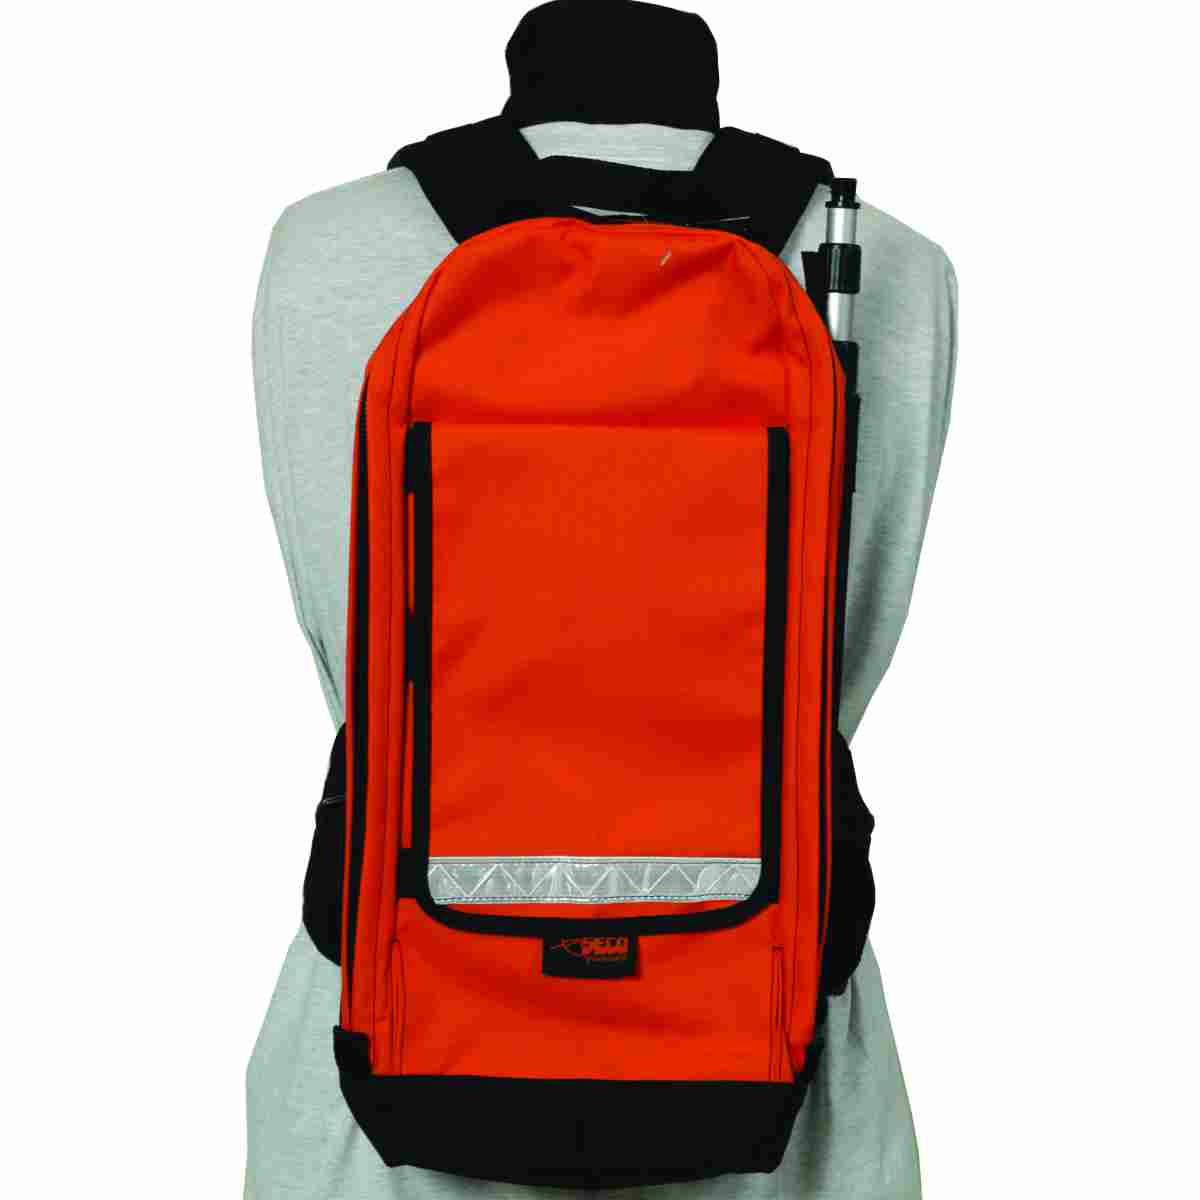 GIS - Rucksack, orange 1,27 kg lichtreflektierende Streifen